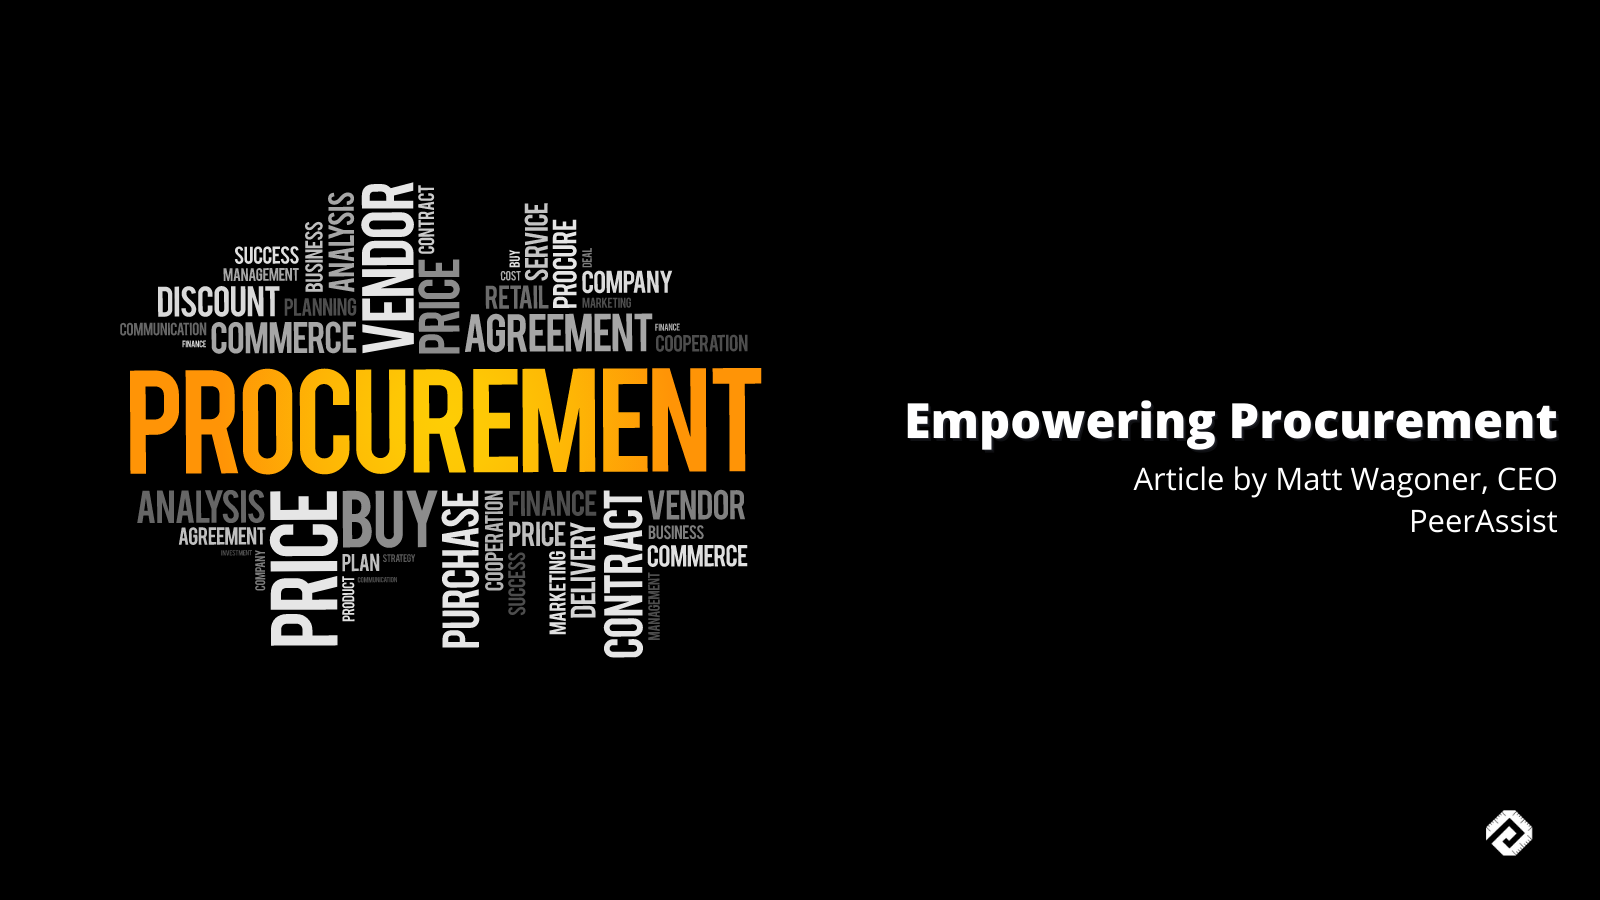 Empowering Procurement by PeerAssist